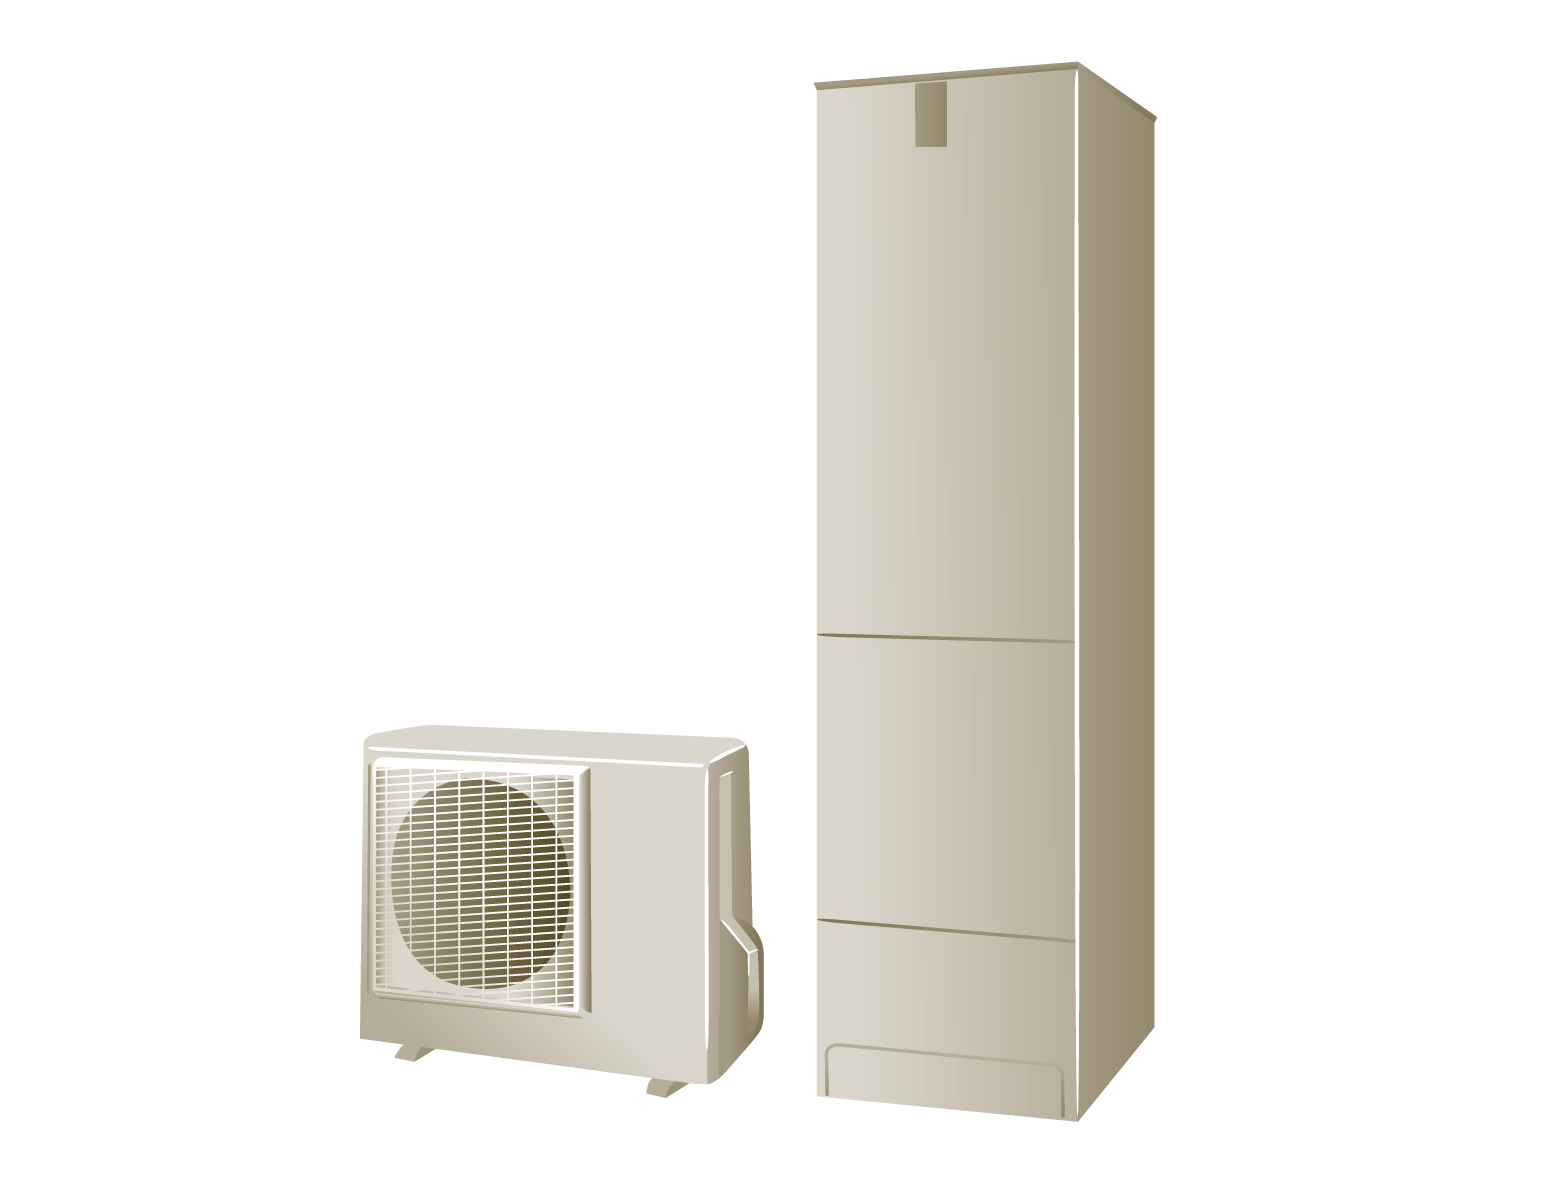 電能 vs 熱泵 vs 瓦斯熱水器比較 熱泵熱水器環保而價格昂貴 怡心牌電熱水器省電節能評價高 能效二級推薦